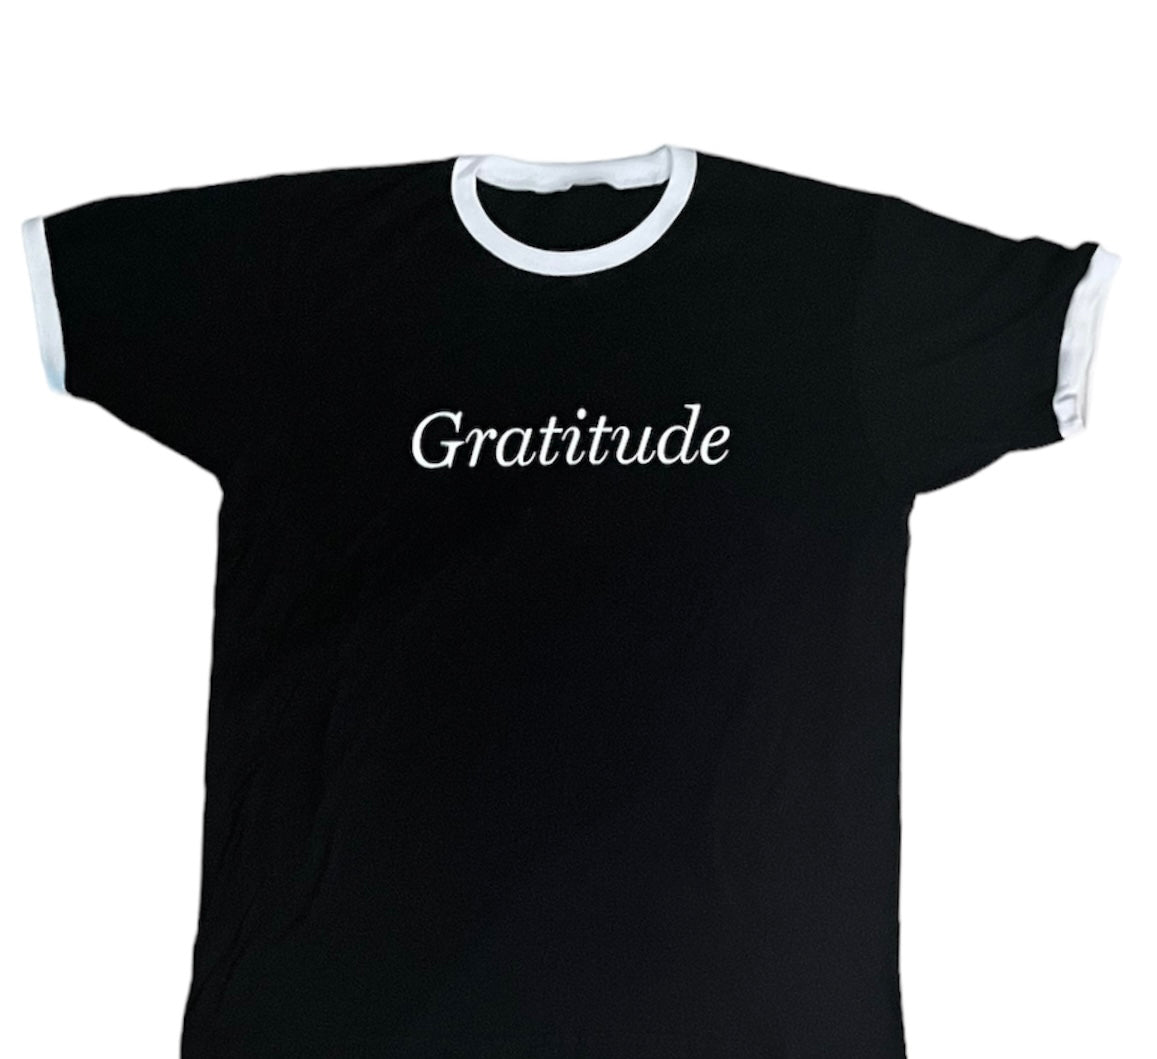 Black Short Sleeve T-Shirt White Lettering Gratitude